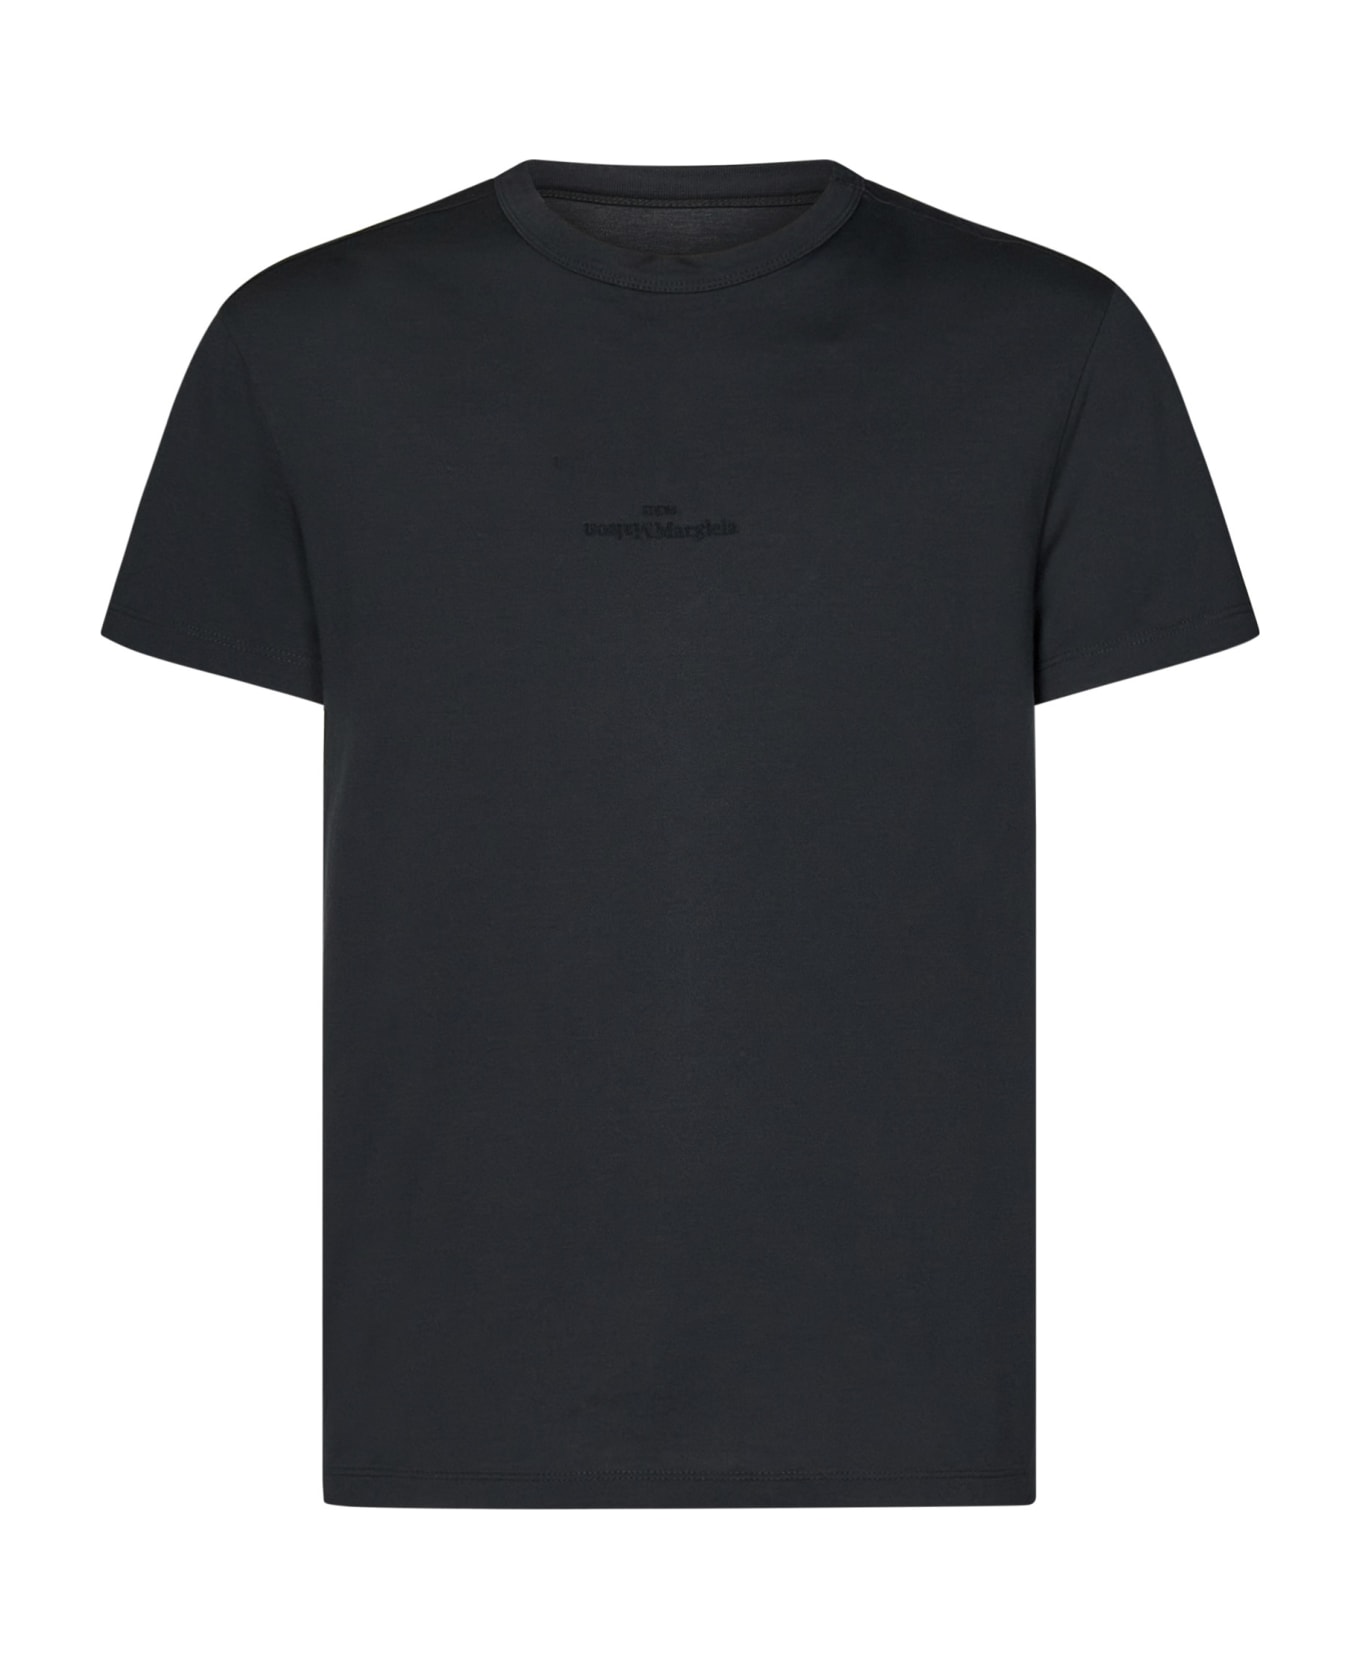 Maison Margiela T-shirt - Grey